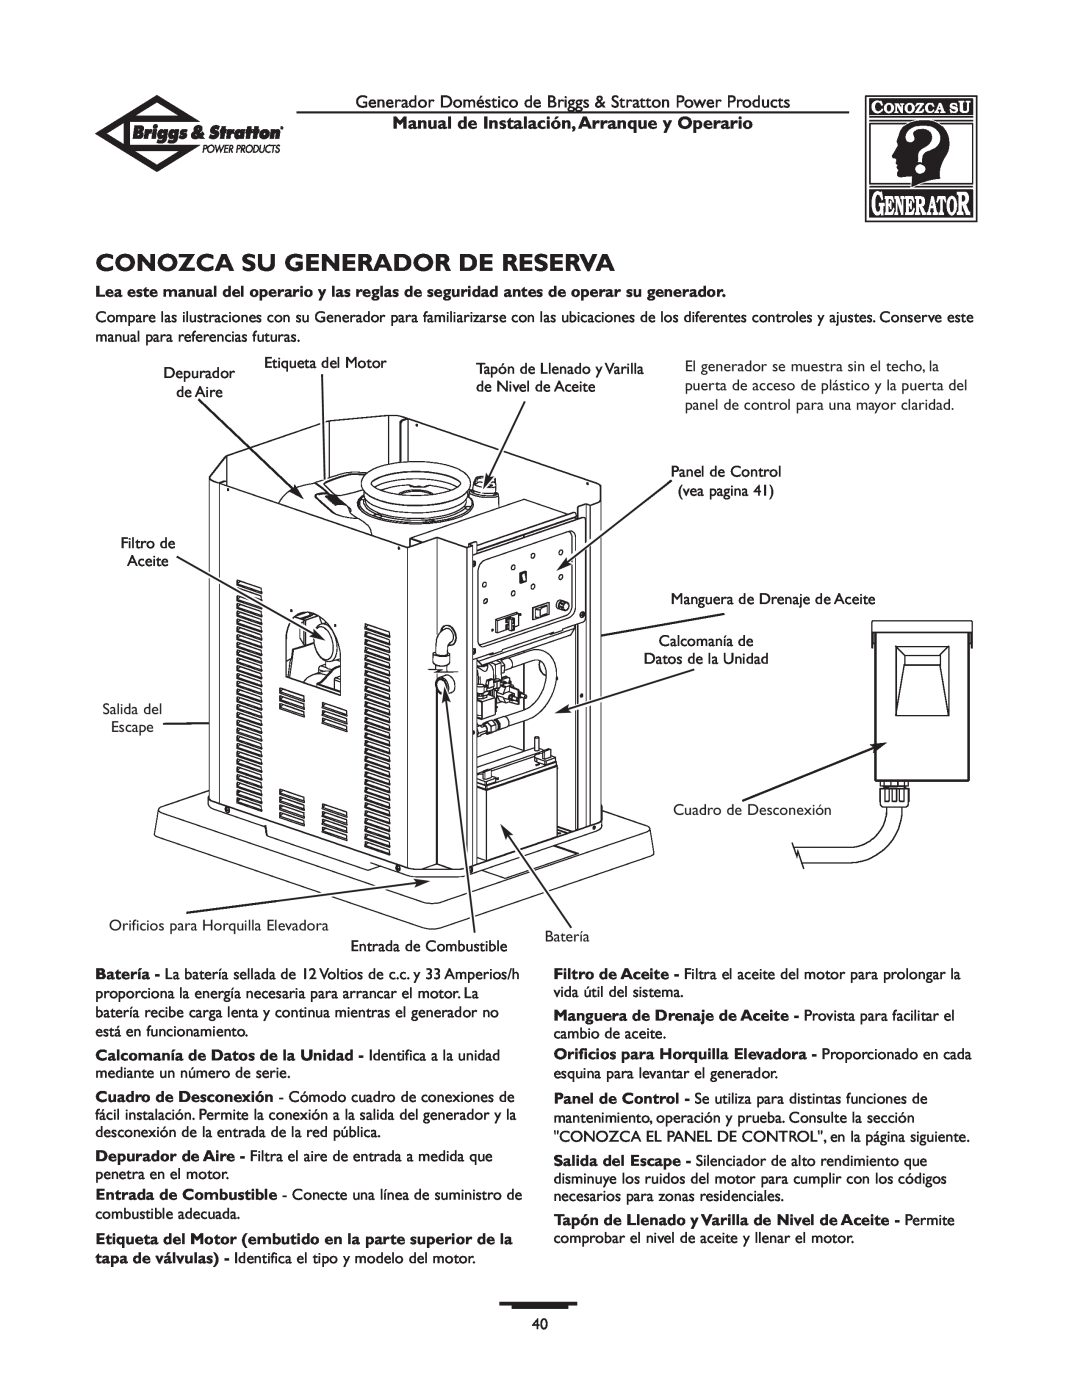 Briggs & Stratton 01897-0 manual Conozca Su Generador De Reserva, Manual de Instalación,Arranque y Operario 